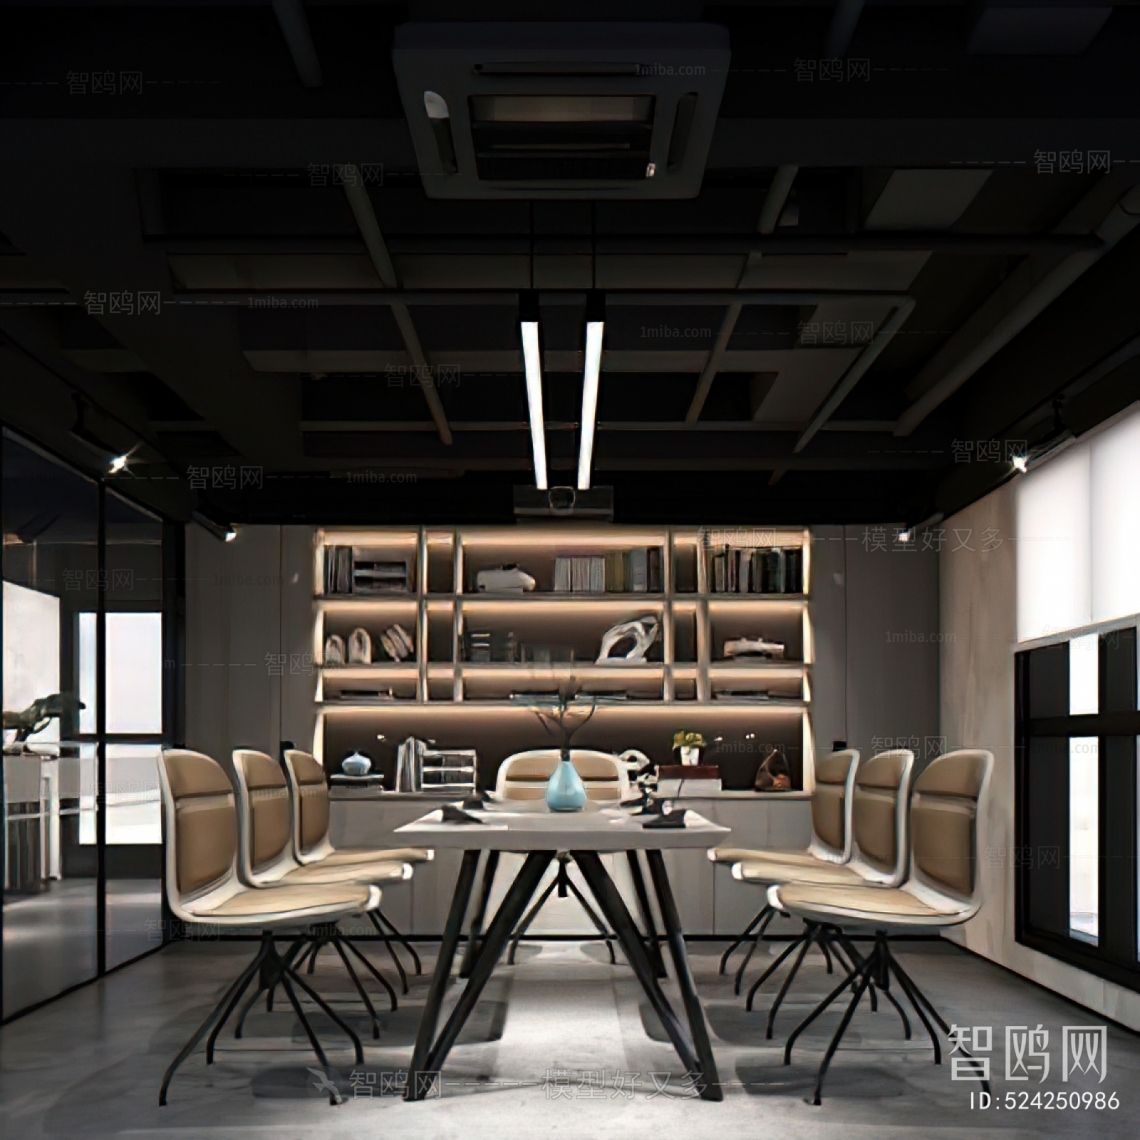 Industrial Style Meeting Room